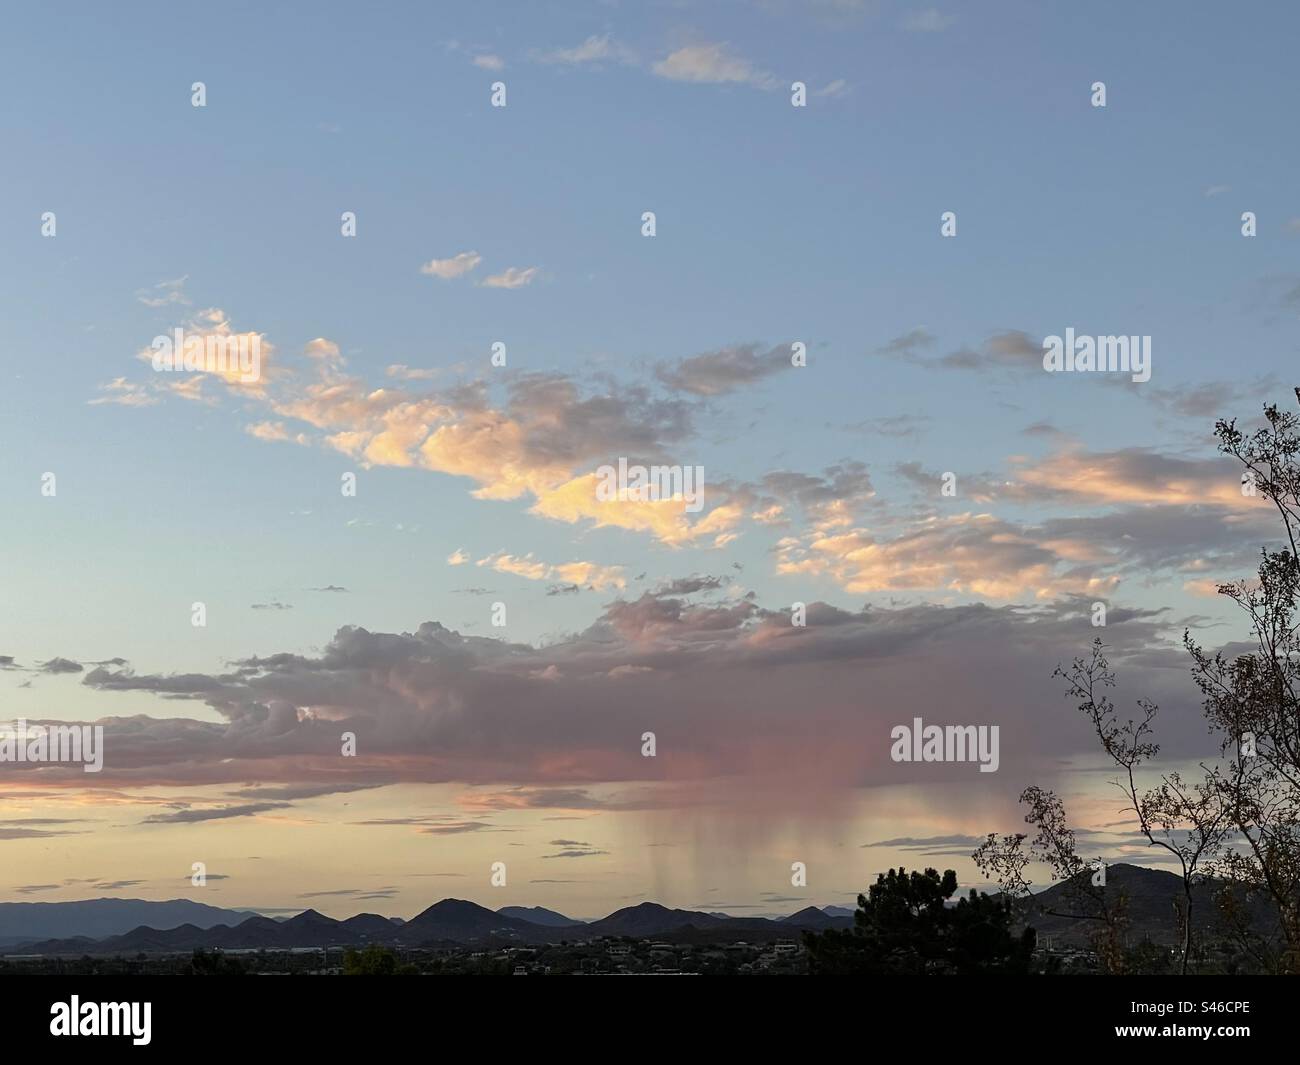 Les moussons de l'Arizona ont commencé!, Virga rose, nuages violets massifs, chaînes de montagnes ombragées, coucher de soleil, Phoenix, vue depuis Lookout Mountain, encadrée par la silhouette de buisson créosote Banque D'Images